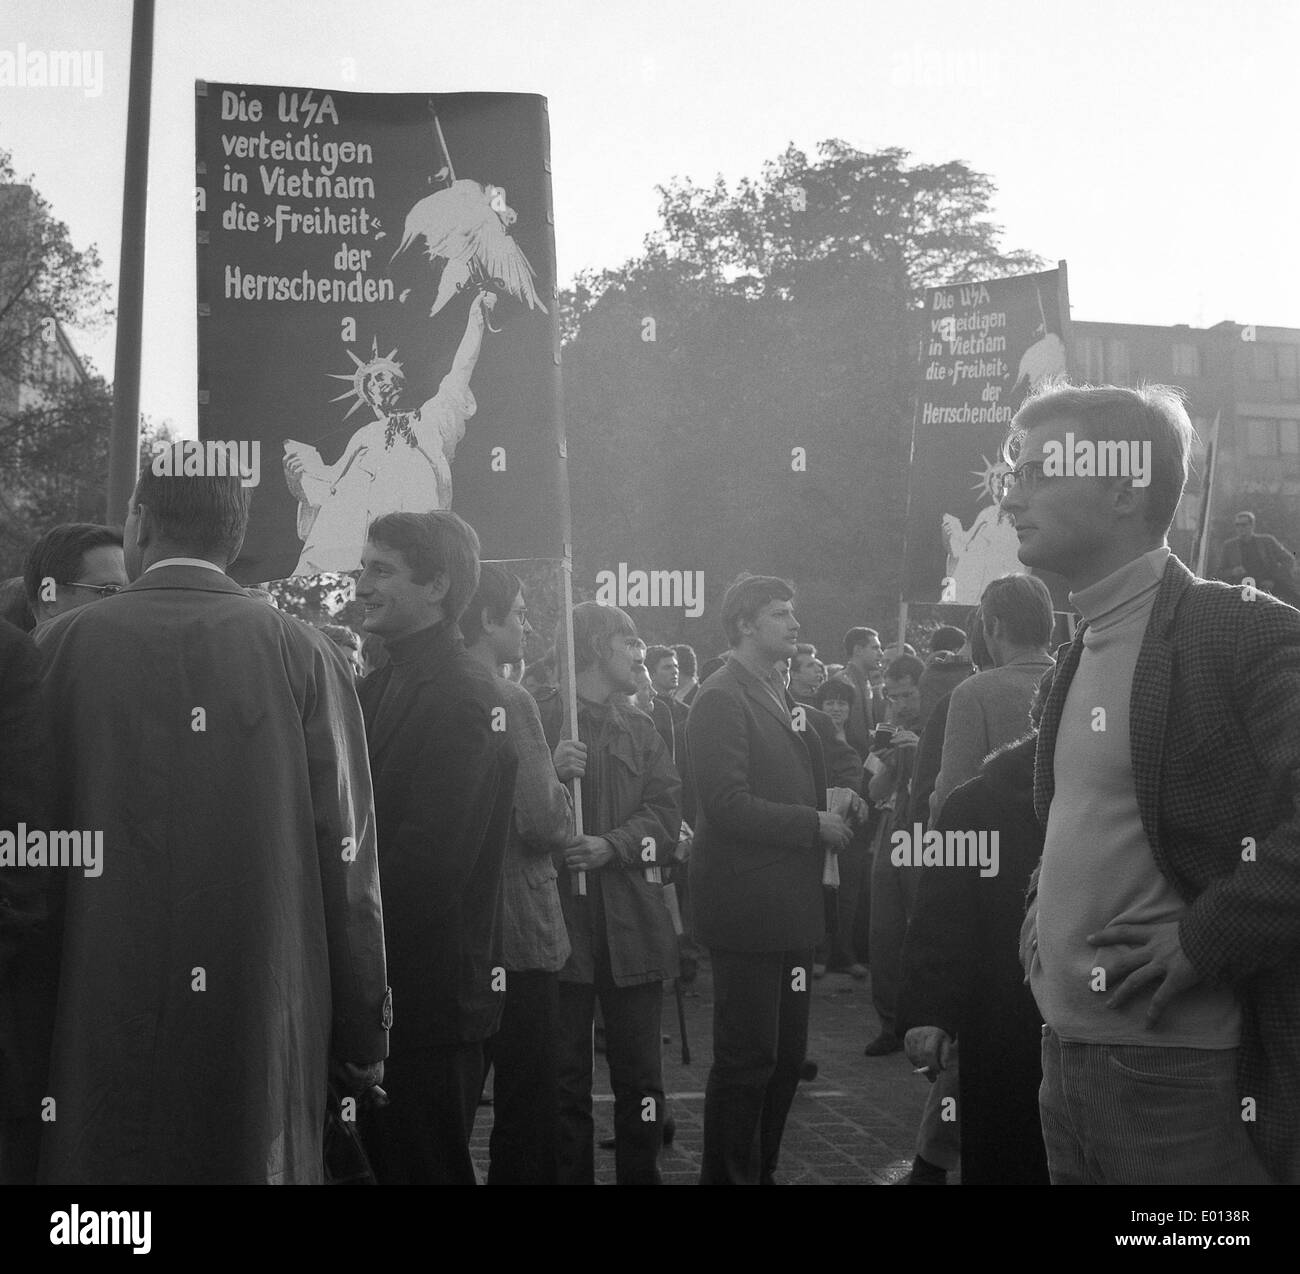 Guerra Anti-Vietnam manifestazione a Berlino, 1968 Foto Stock